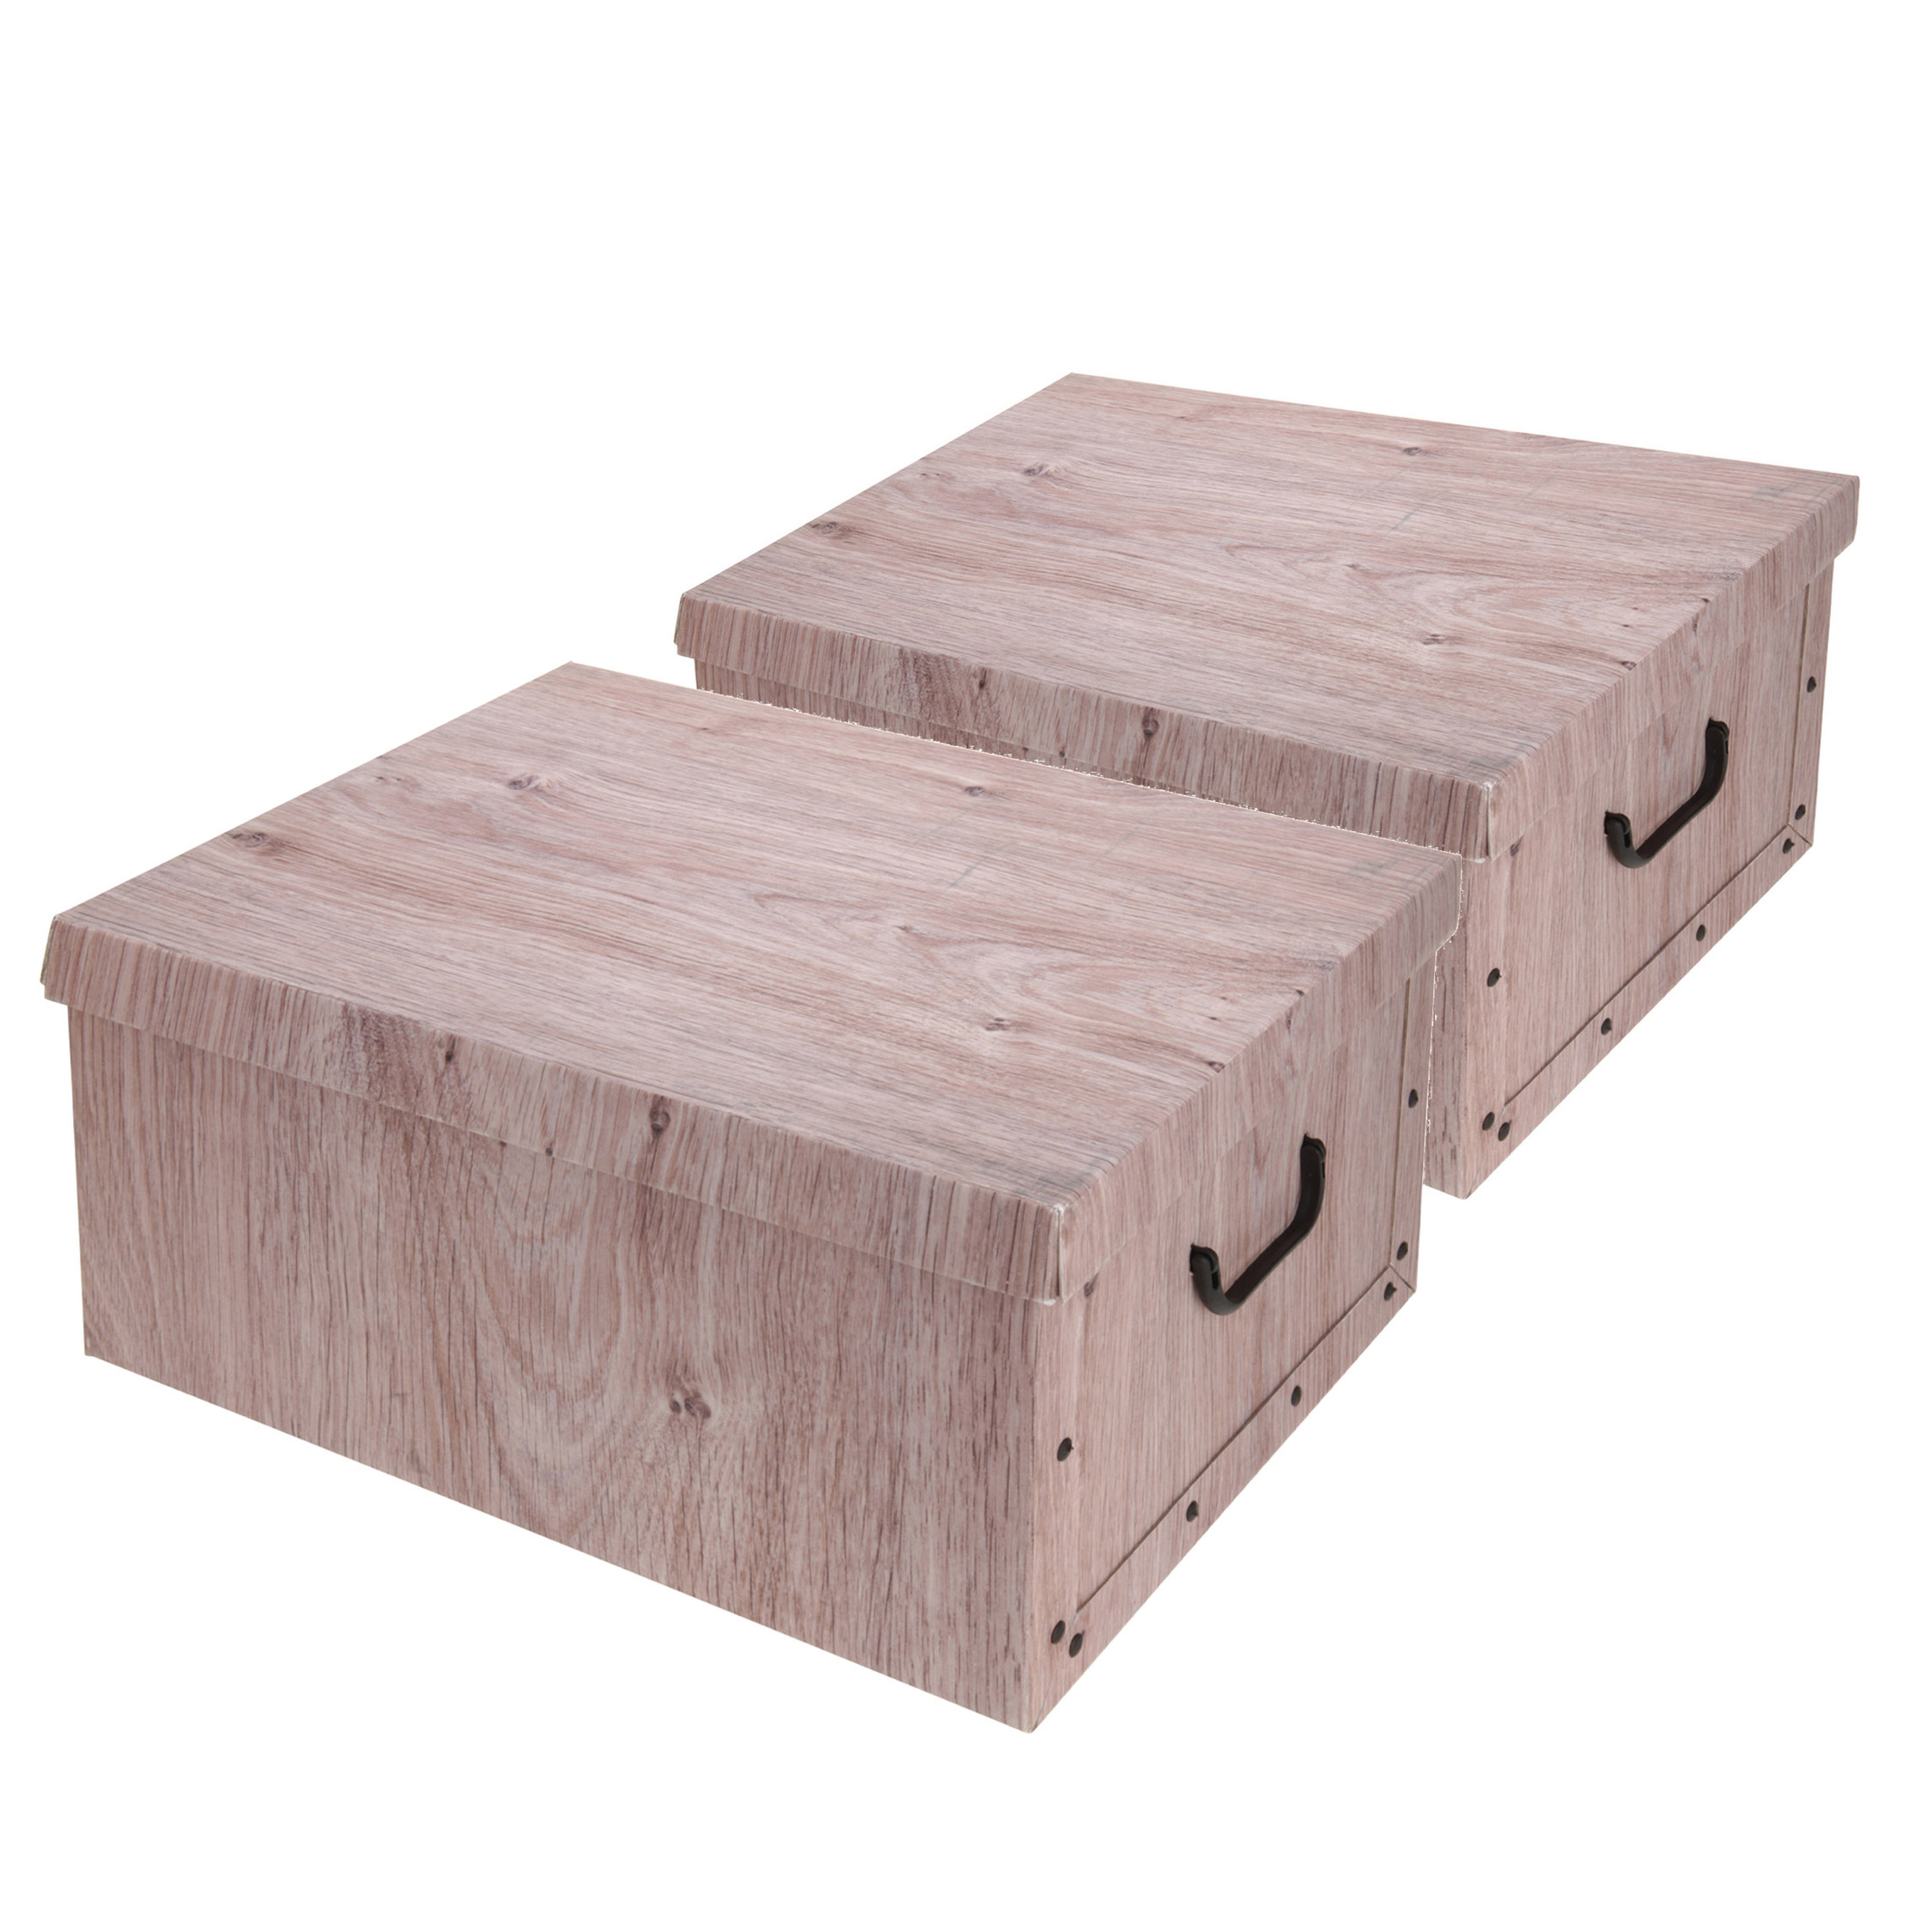 Set van 5x stuks opbergdoos-opberg box van karton met hout print bruin 37 x 30 x 16 cm